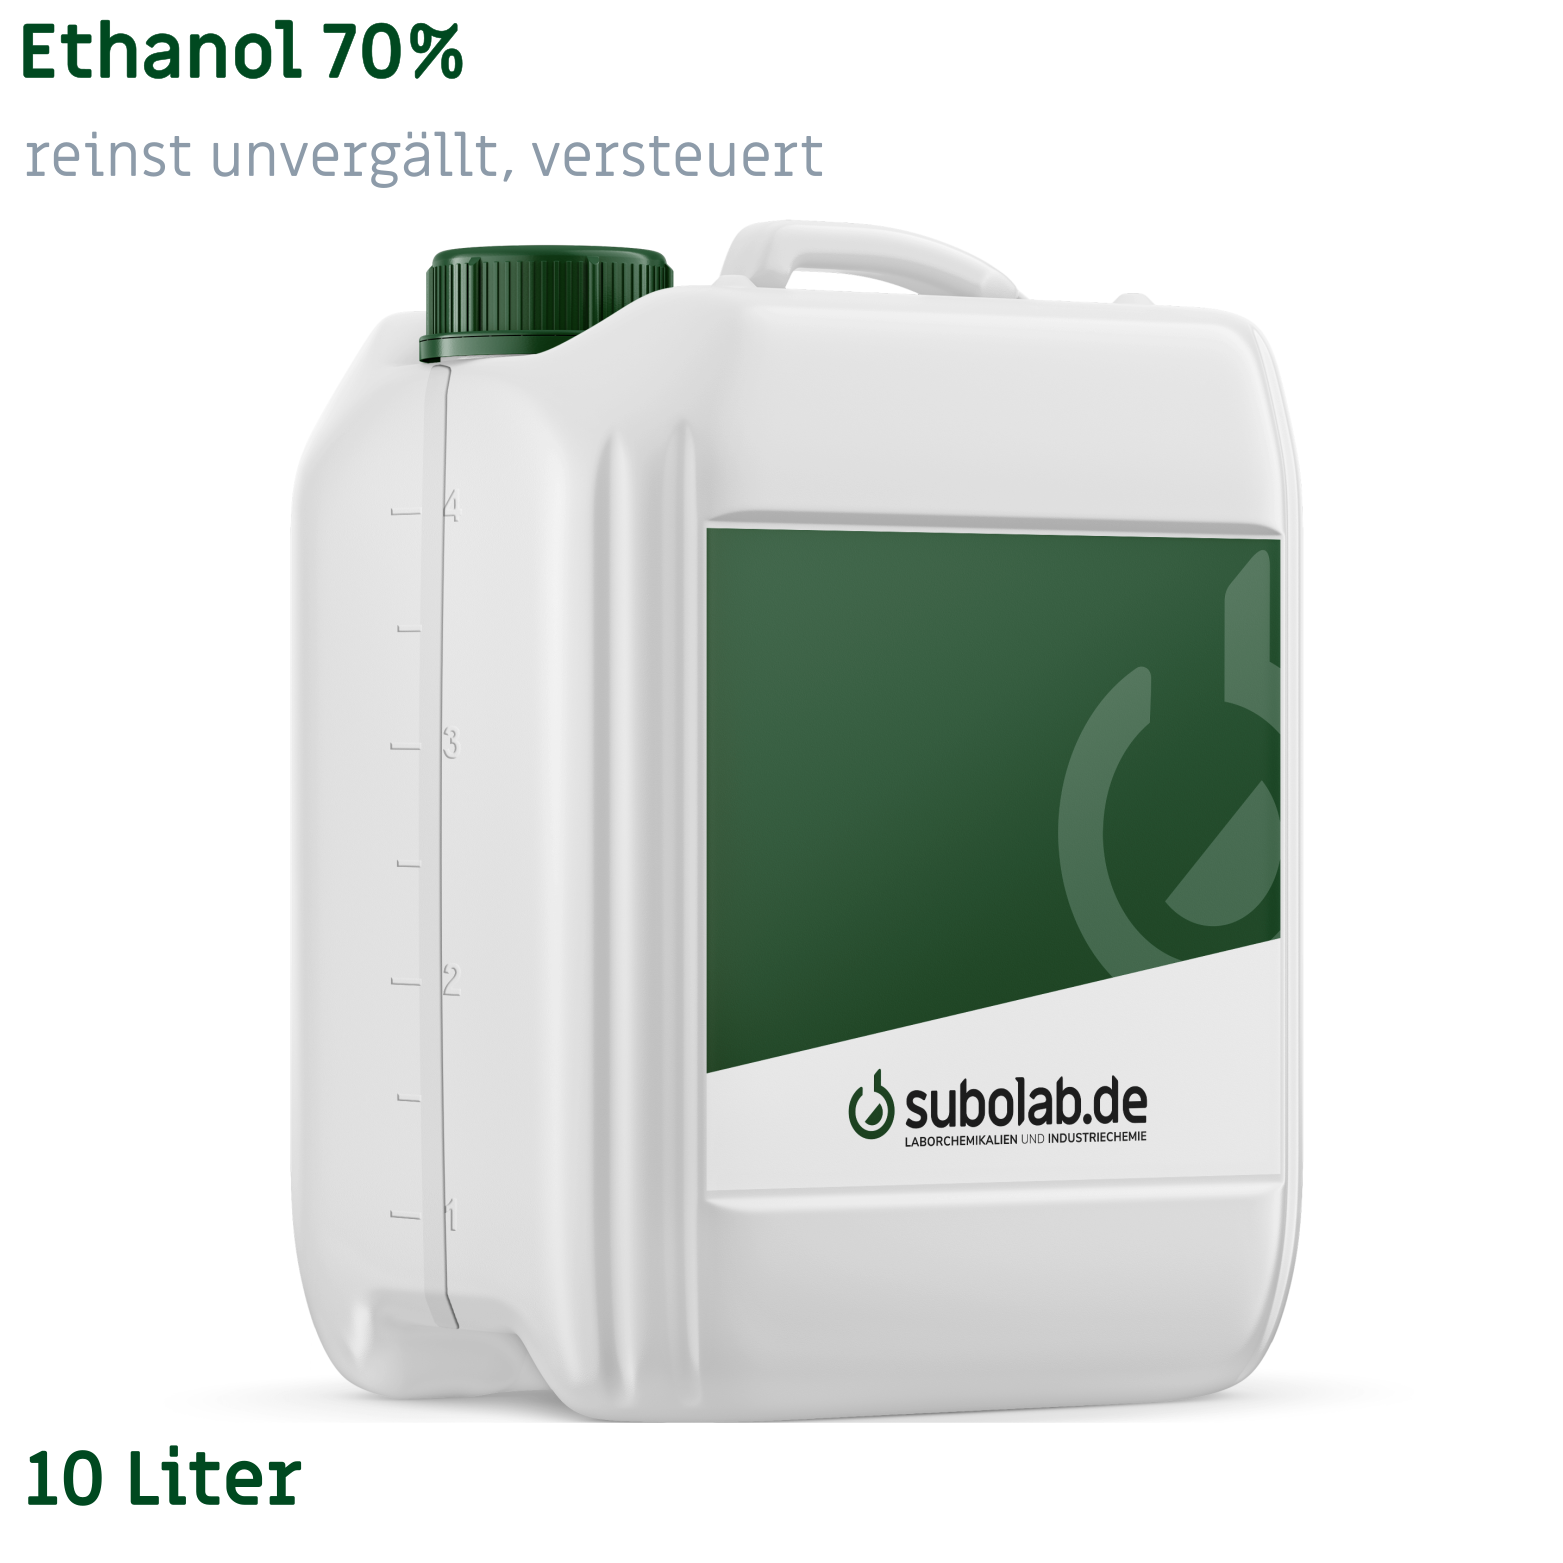 Bild von Ethanol 70% reinst unvergällt, versteuert (10 Liter)